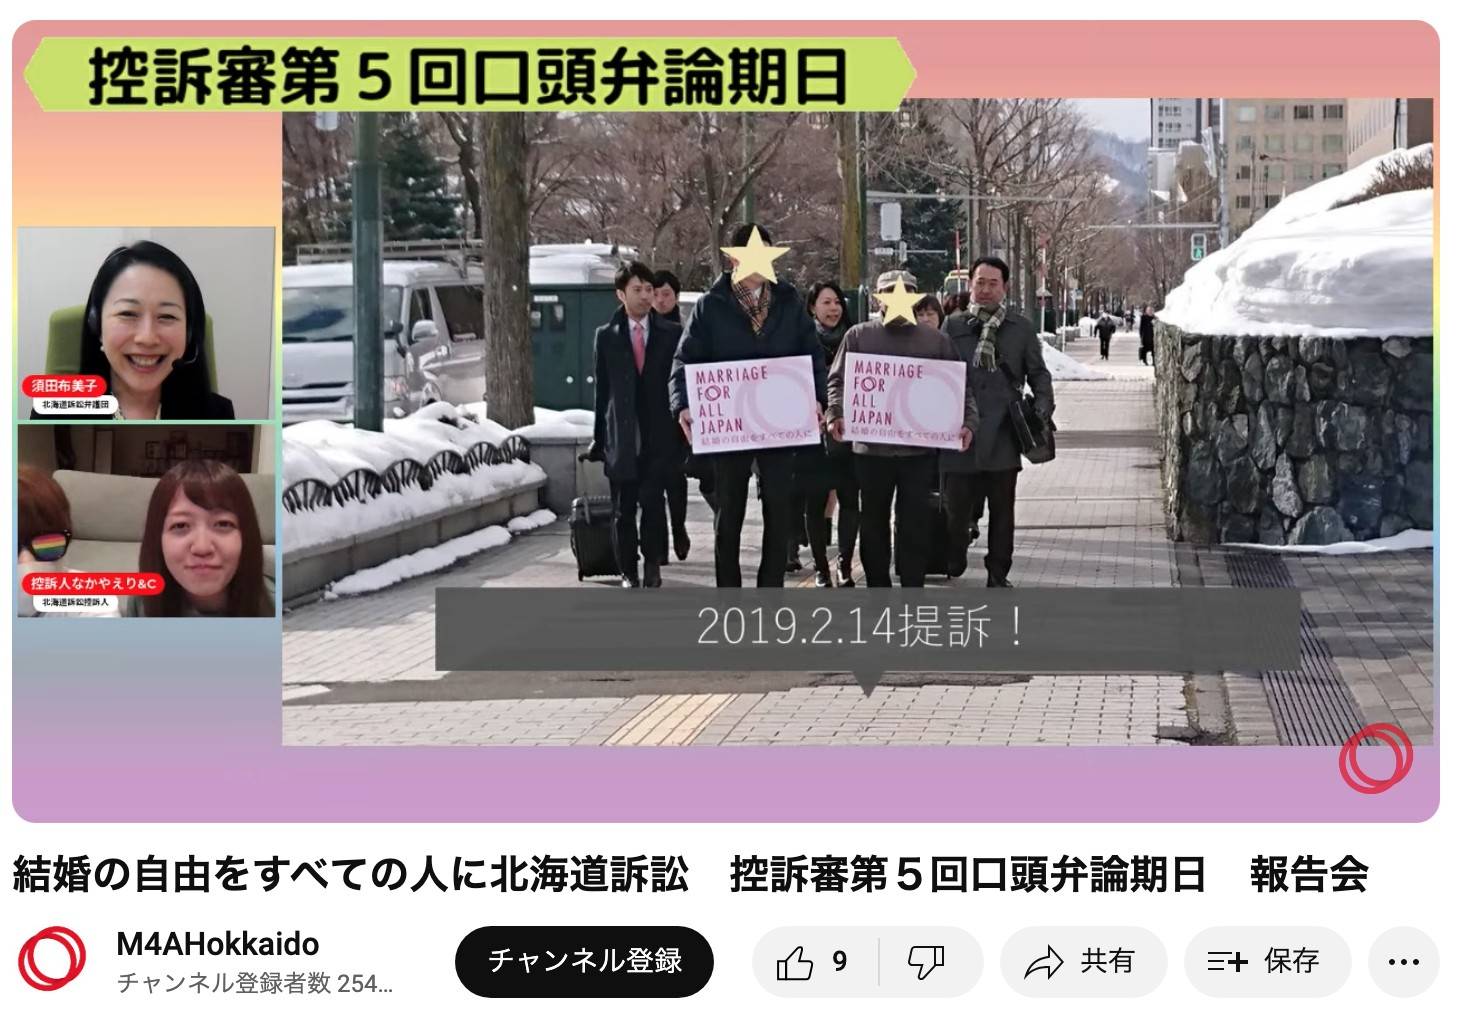 配信報告の様子。YouTubeの画面に、「結婚の自由をすべての人に」北海道訴訟の訴状を札幌地方裁判所に提出しに来た原告さんたちと代理人弁護士たちが写っている。